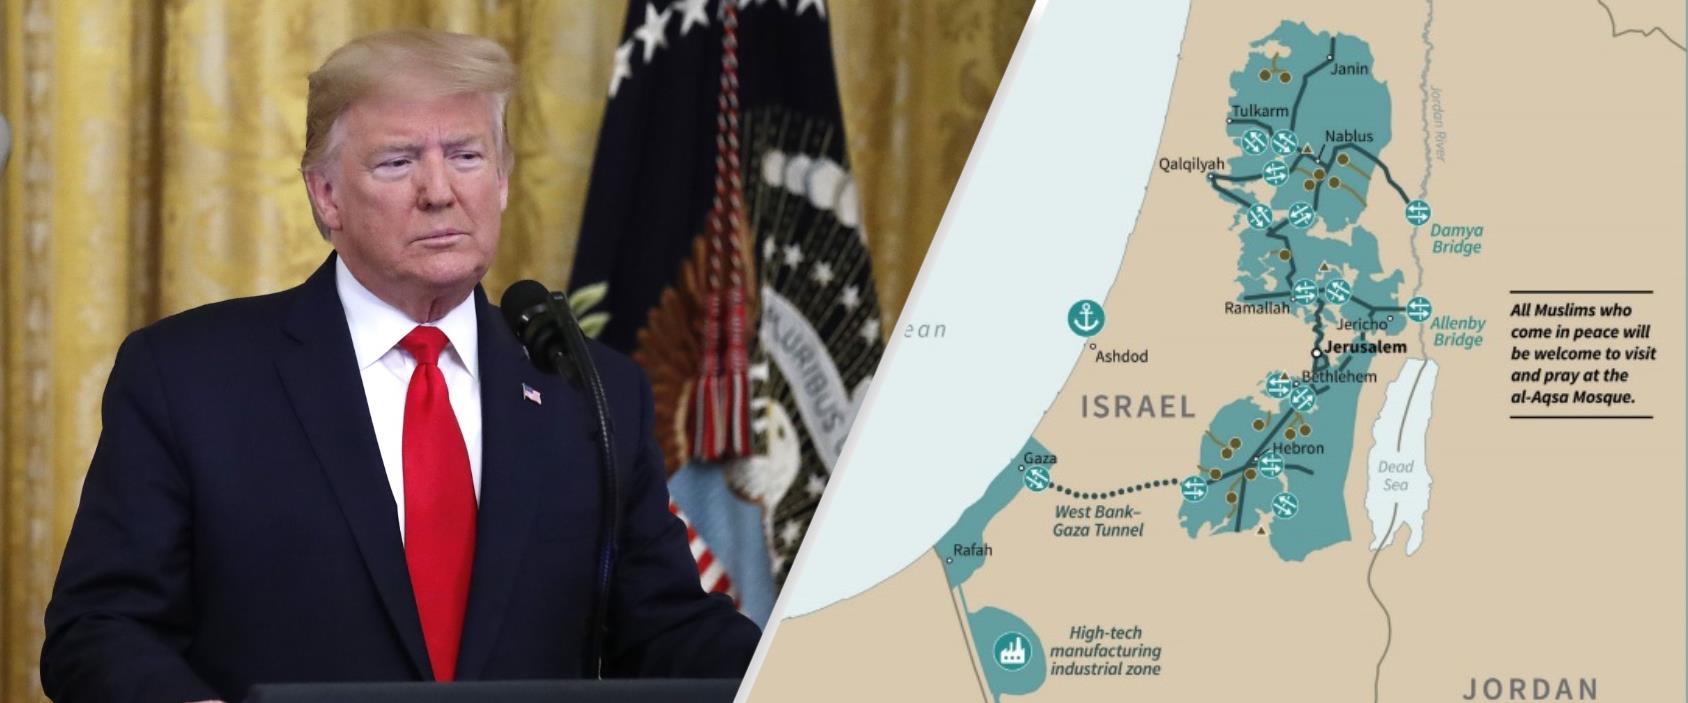 מפת "המדינה הפלסטינית העתידית" לפי תוכנית טראמפ